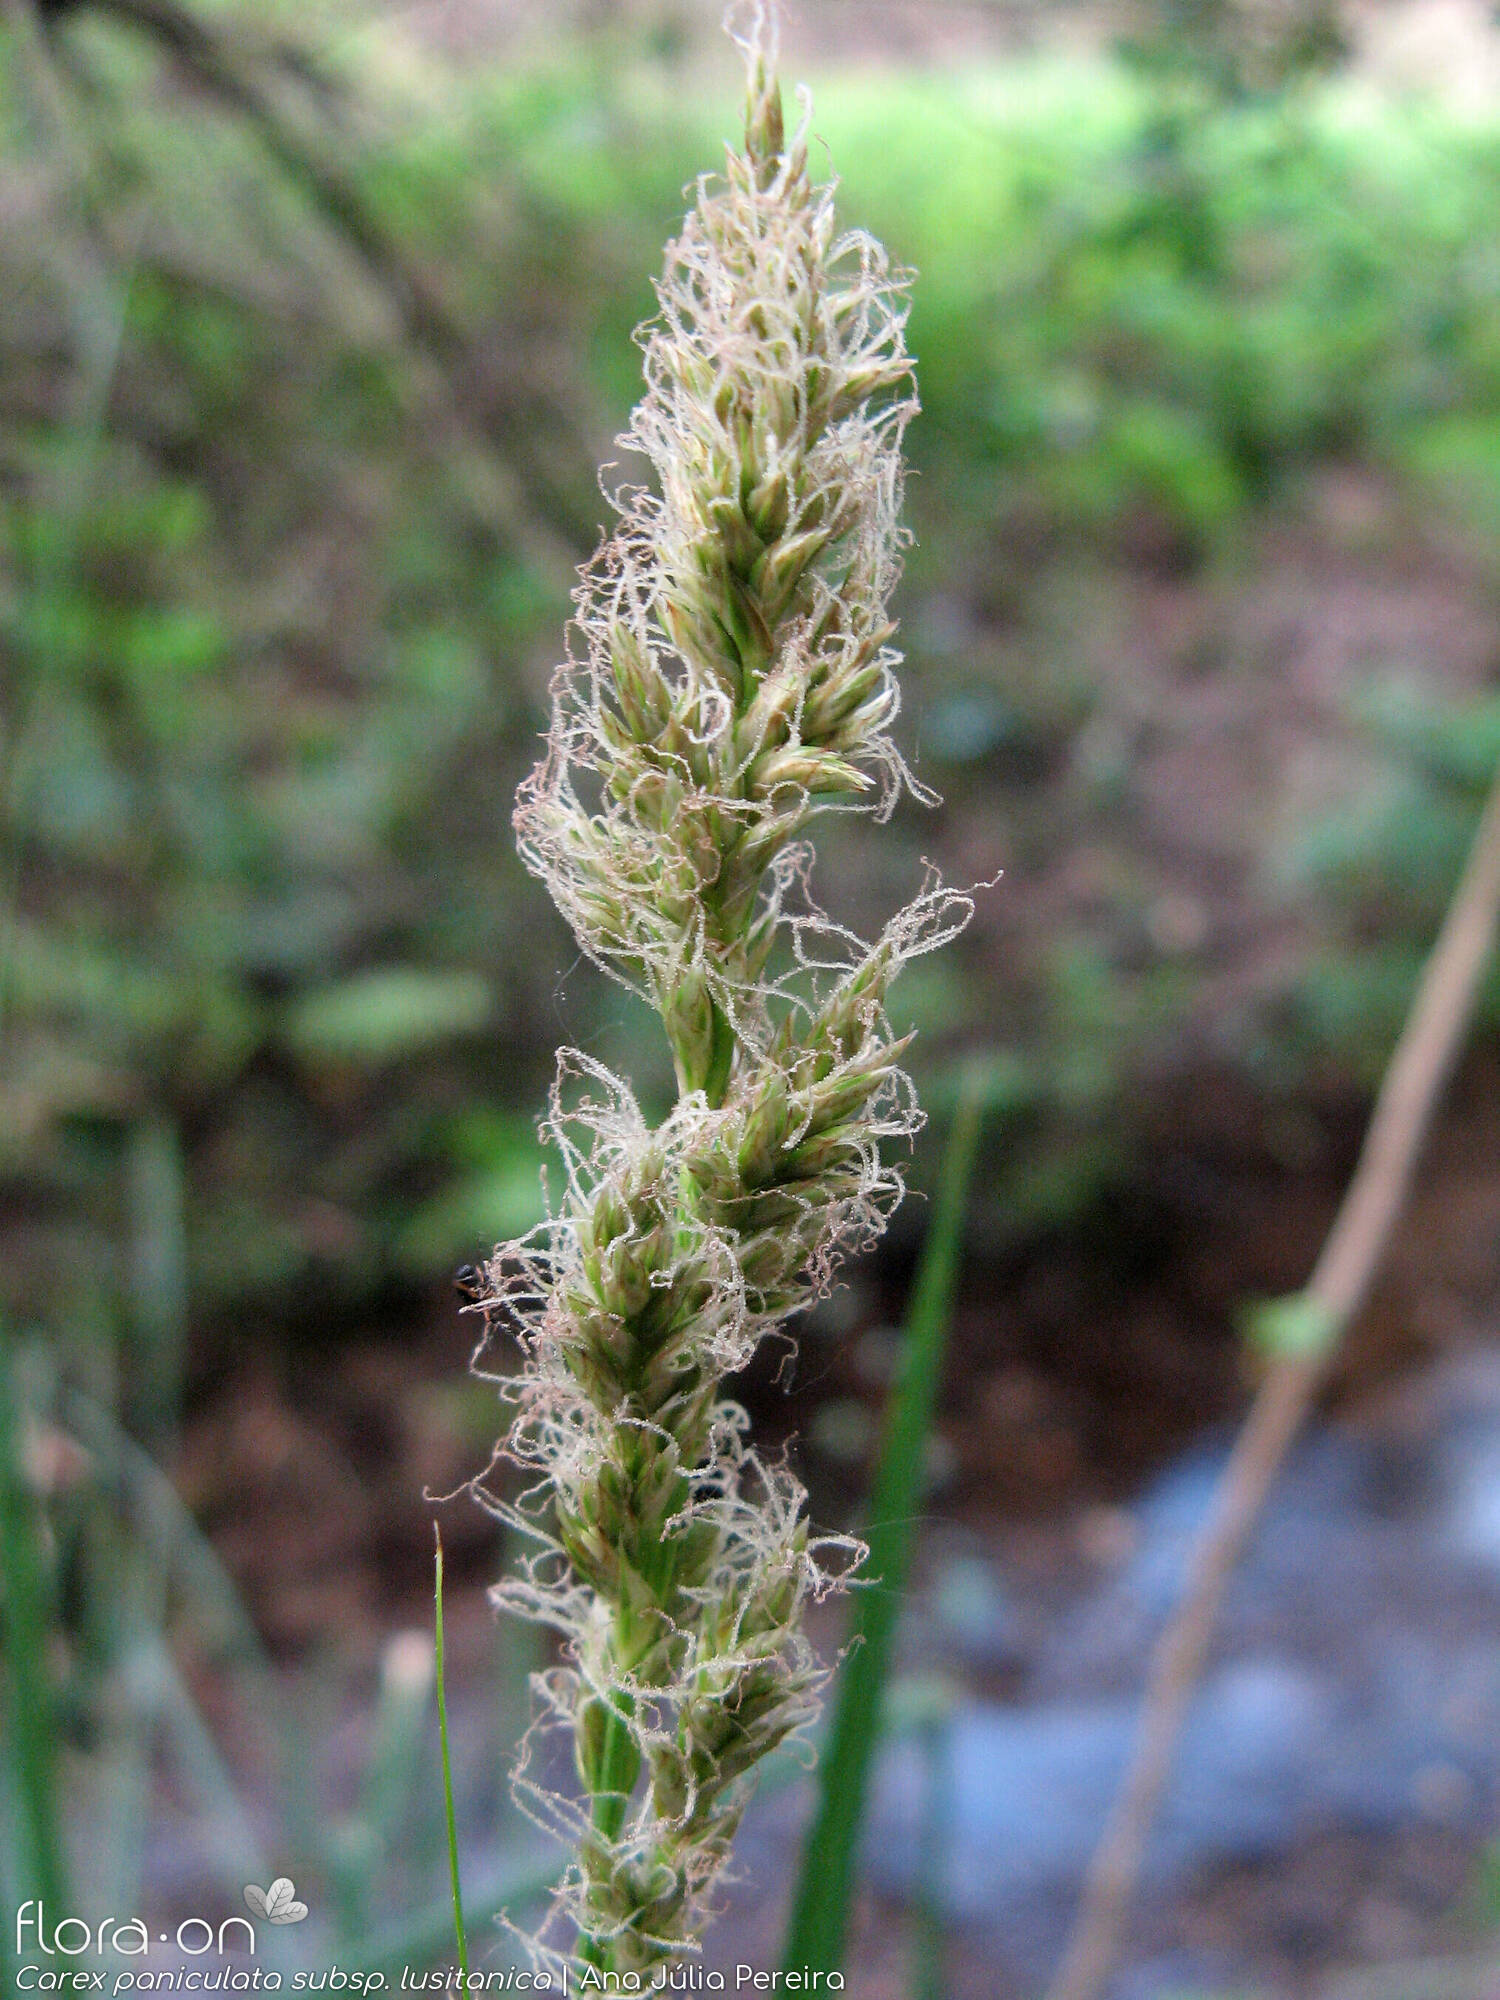 Carex paniculata lusitanica - Flor (geral) | Ana Júlia Pereira; CC BY-NC 4.0